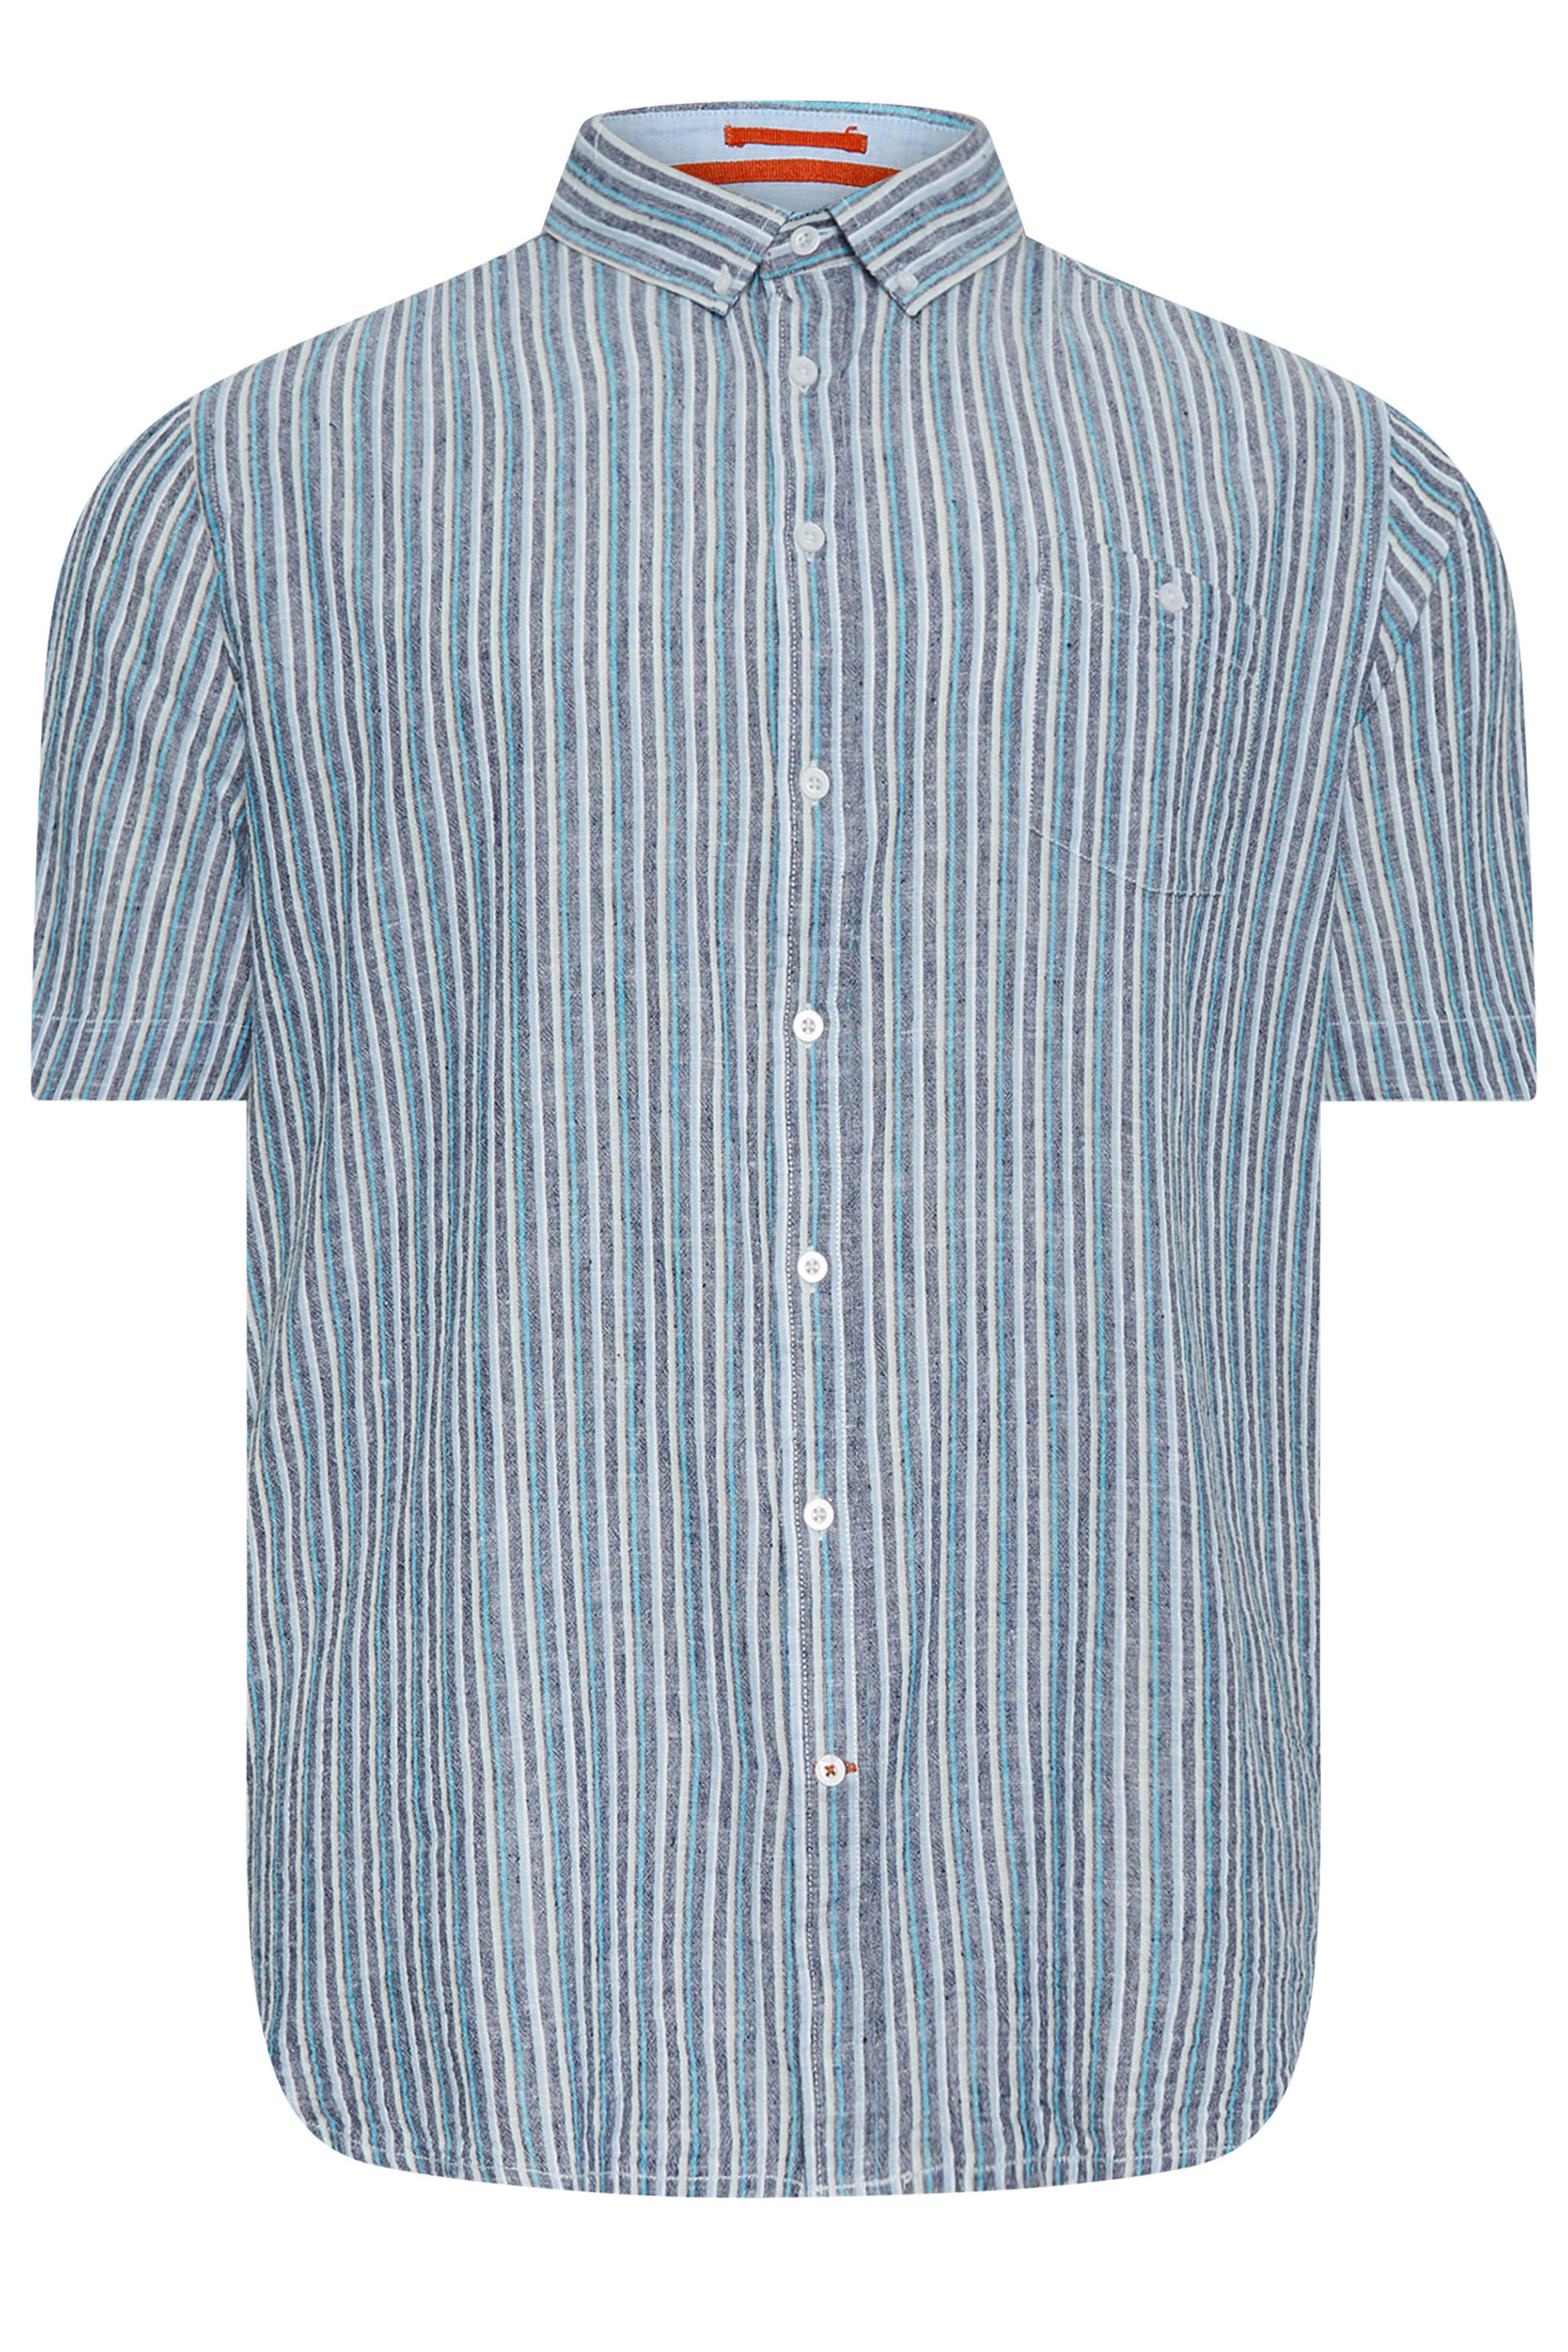 D555 Big & Tall Navy Blue Linen Vertical Stripe Short Sleeve Shirt | BadRhino 1